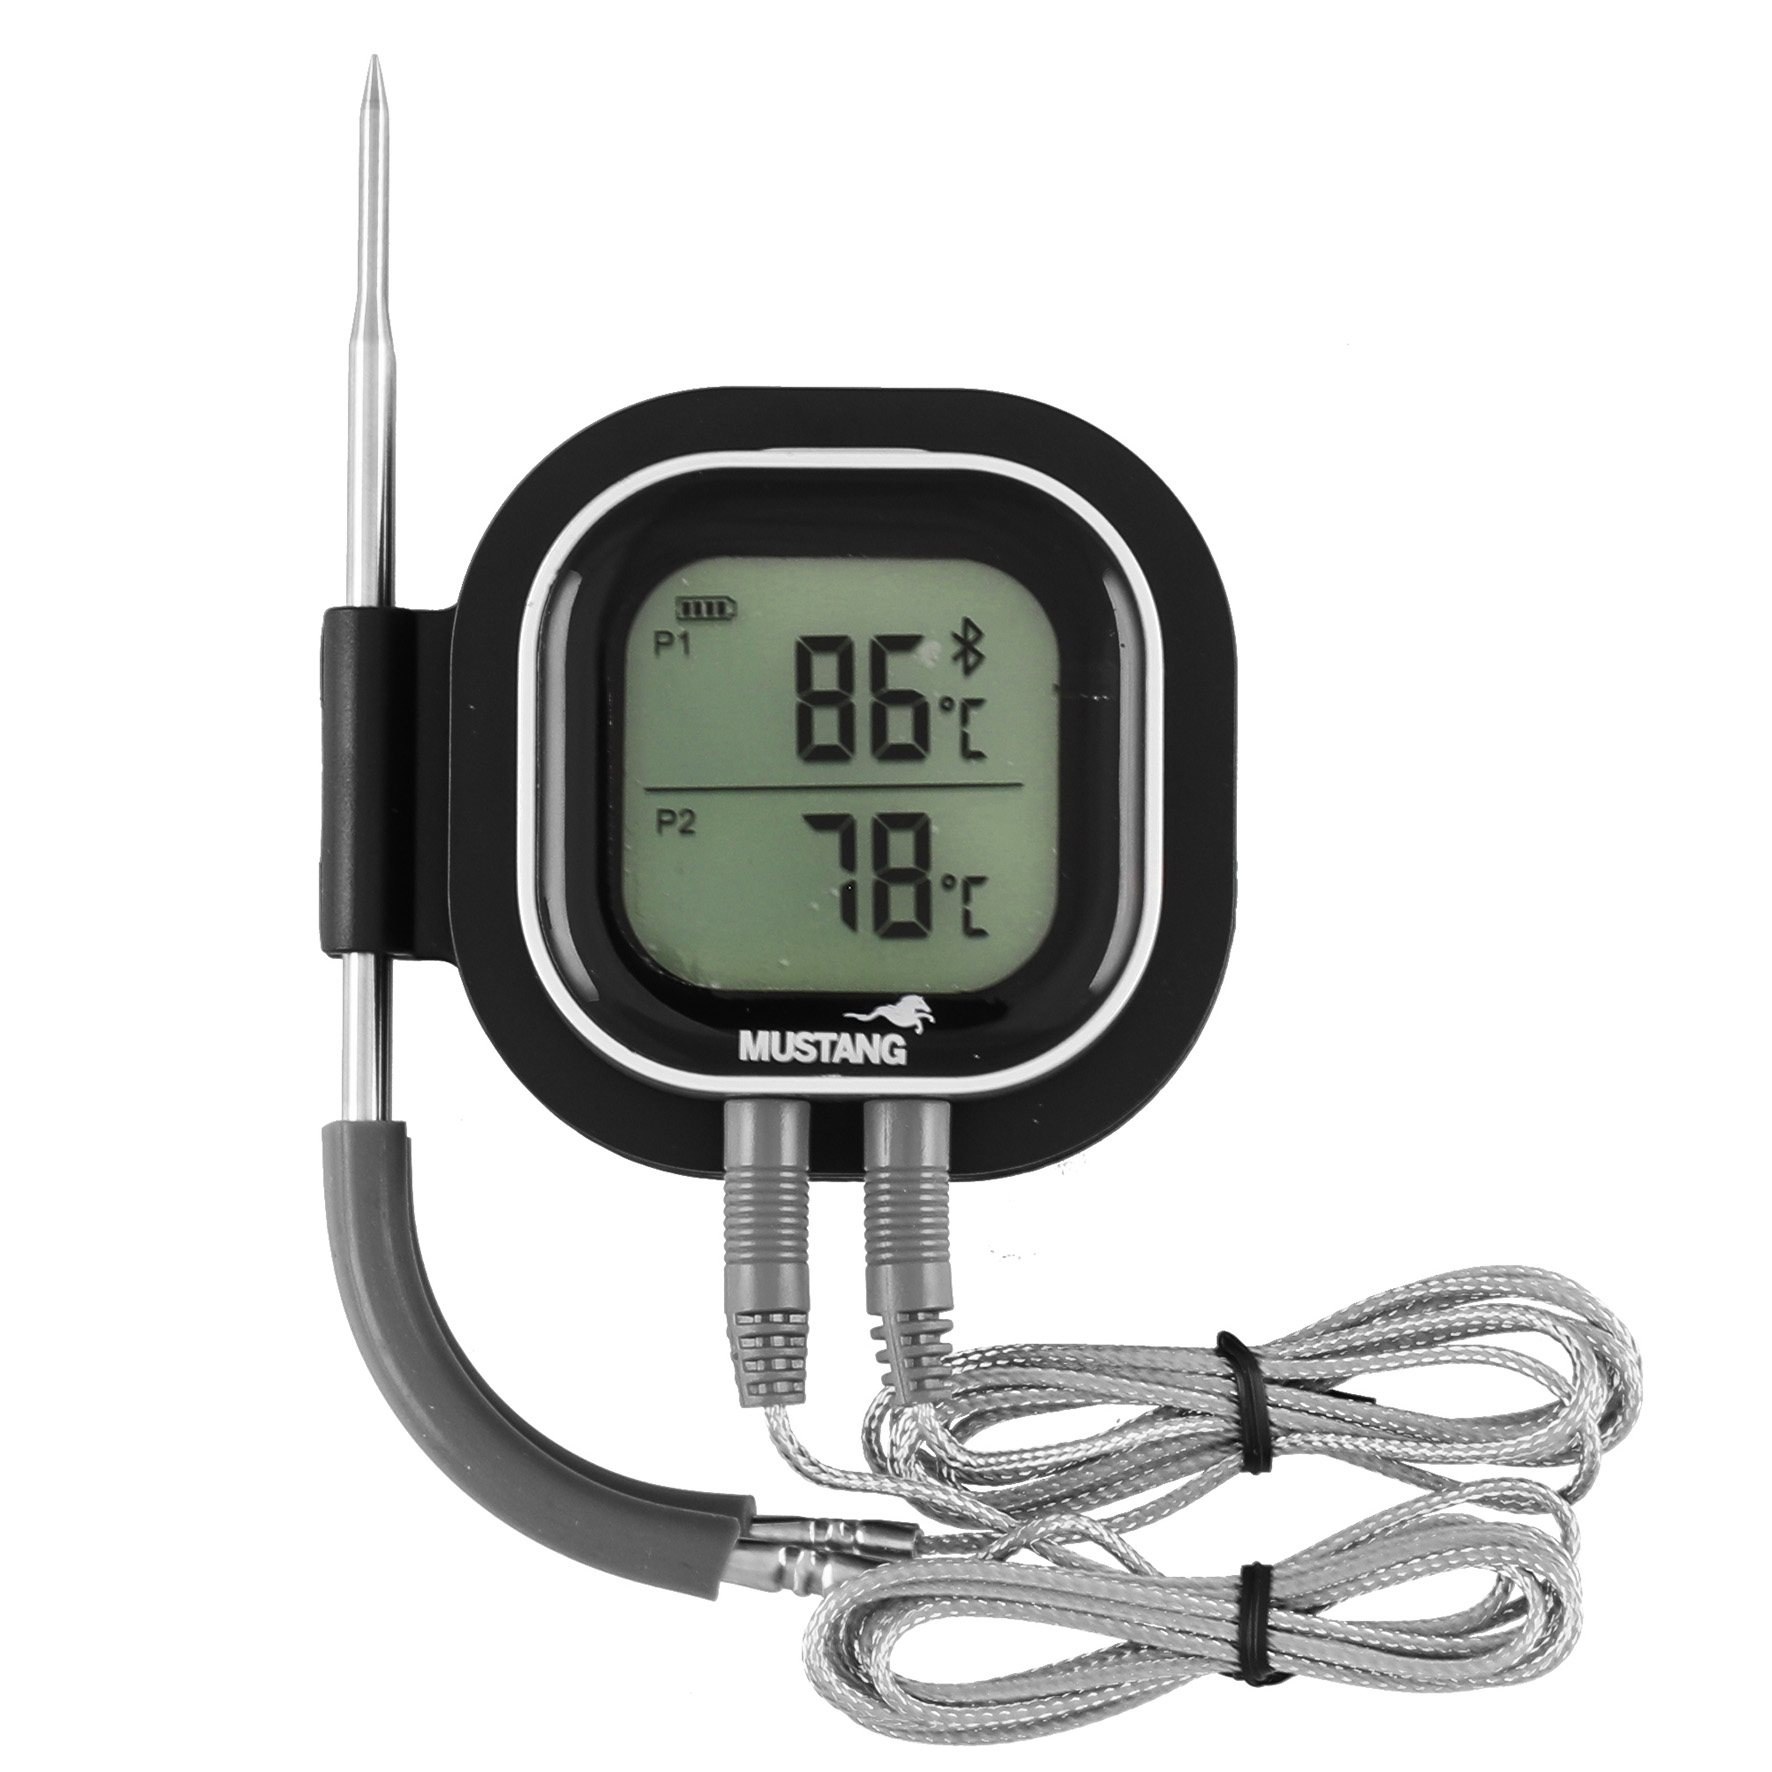 [8565391] Digital Termometer App MUSTANG